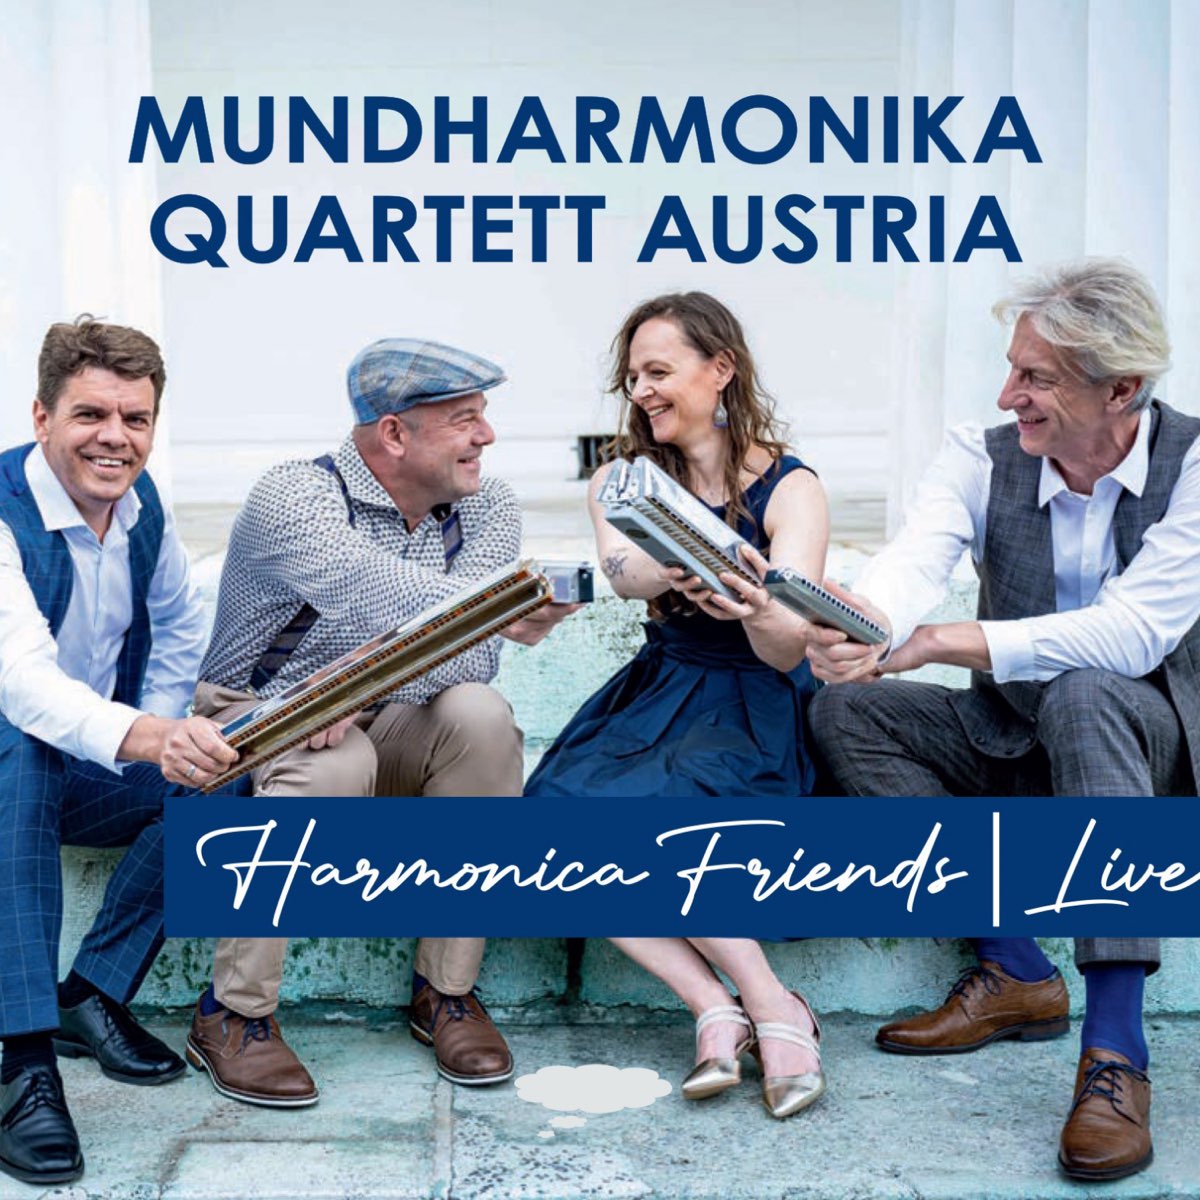 Harmonica Friends – Album von Mundharmonika Quartett Austria – Apple Music